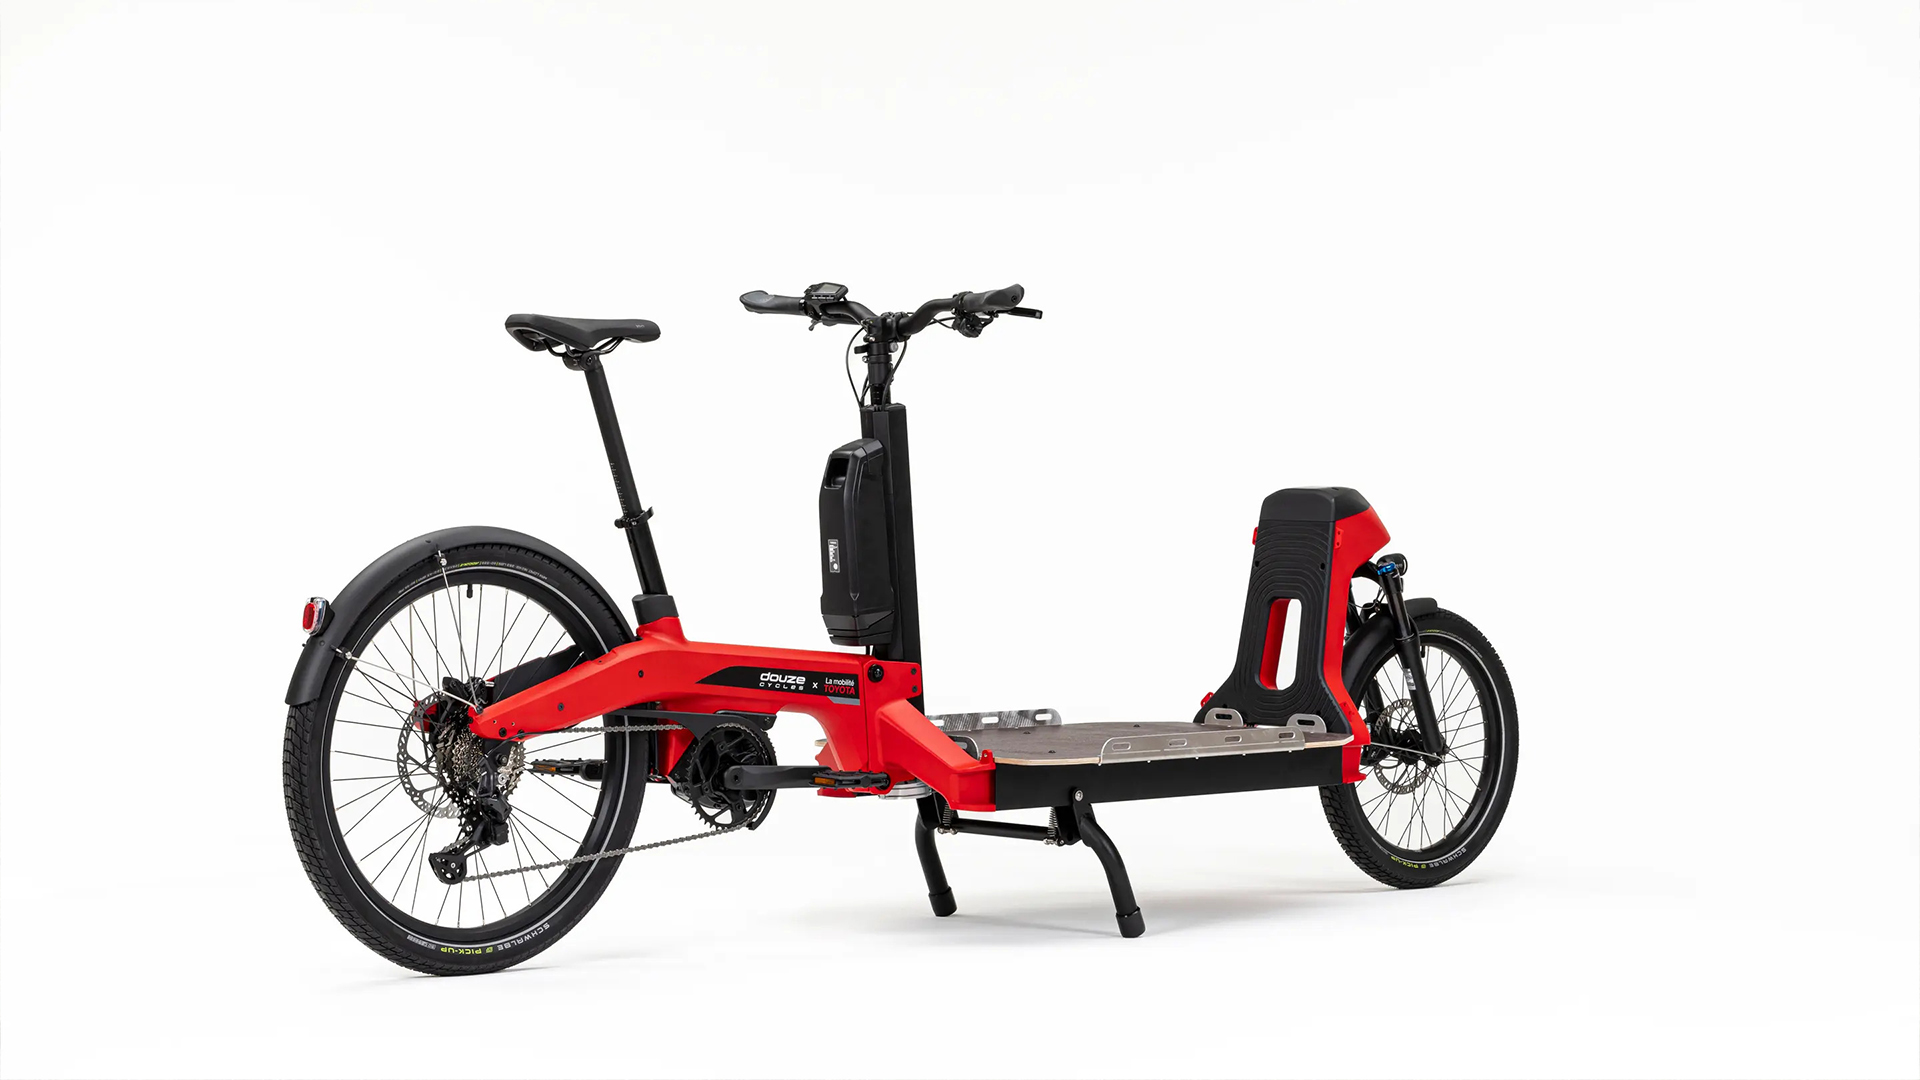 TOYOTA cria bicicleta eletrica de carga capaz de levar ate tres pessoas ou 100 kg de materiais diversos com bateria de 500 Wh e 100 Km de autonomia